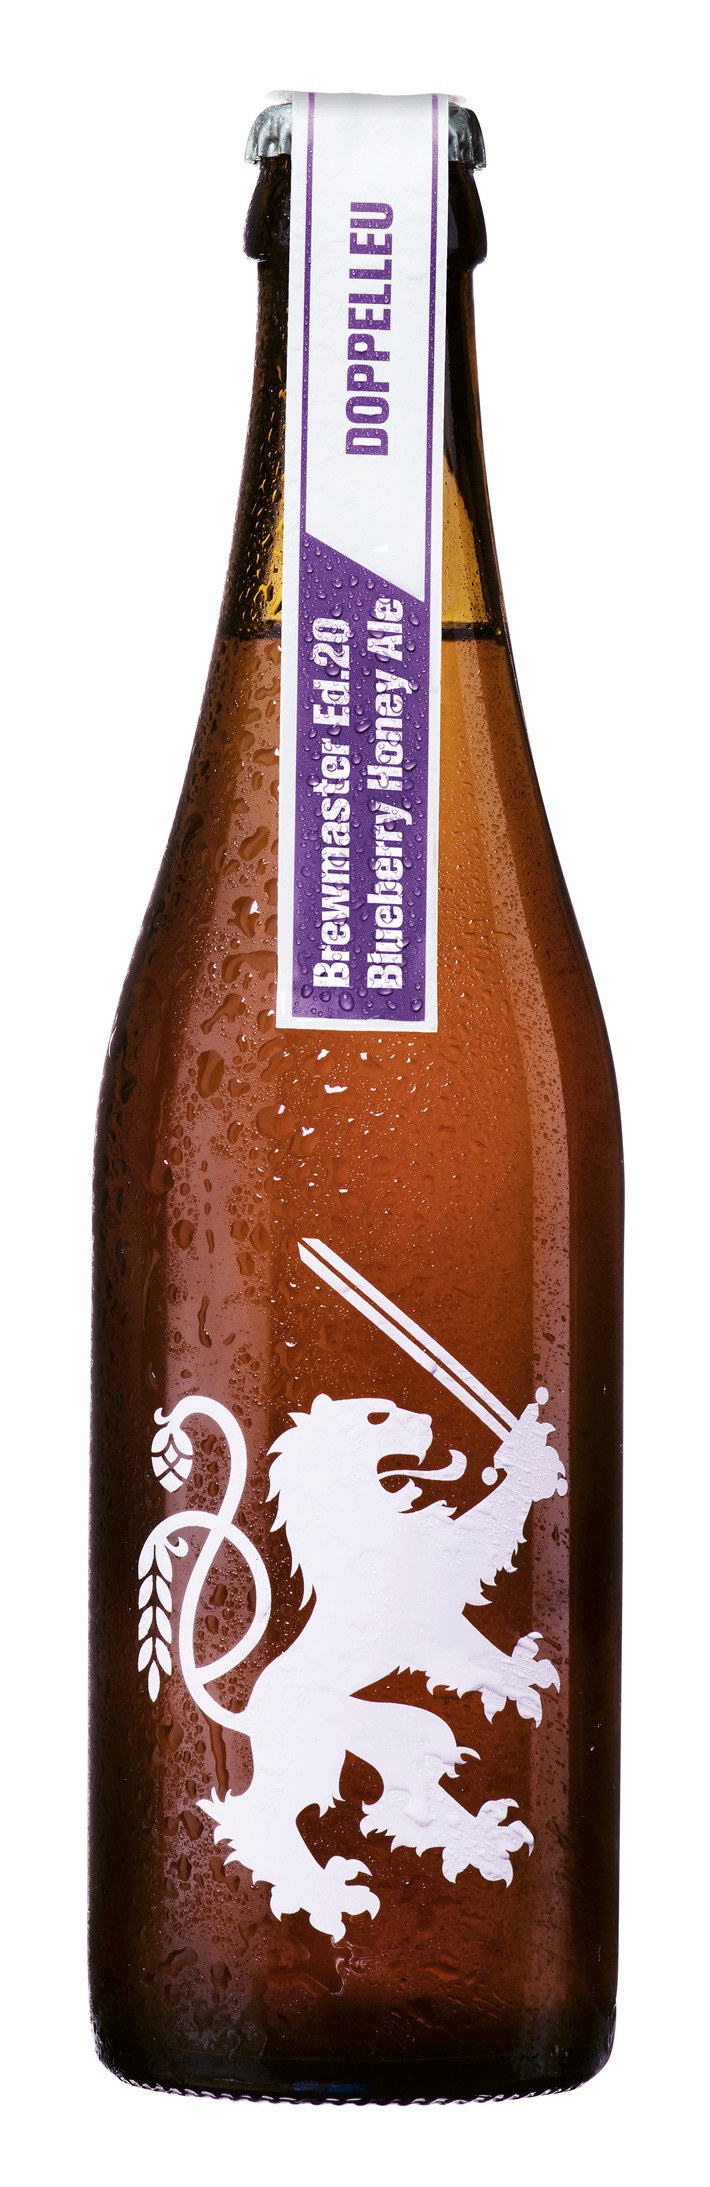 Die Doppelleu Brewmaster Limited Ed.20 bringt Farbe ins Spiel: Blueberry Honey Ale erfreut nicht nur das Auge sondern auch den Gaumen.